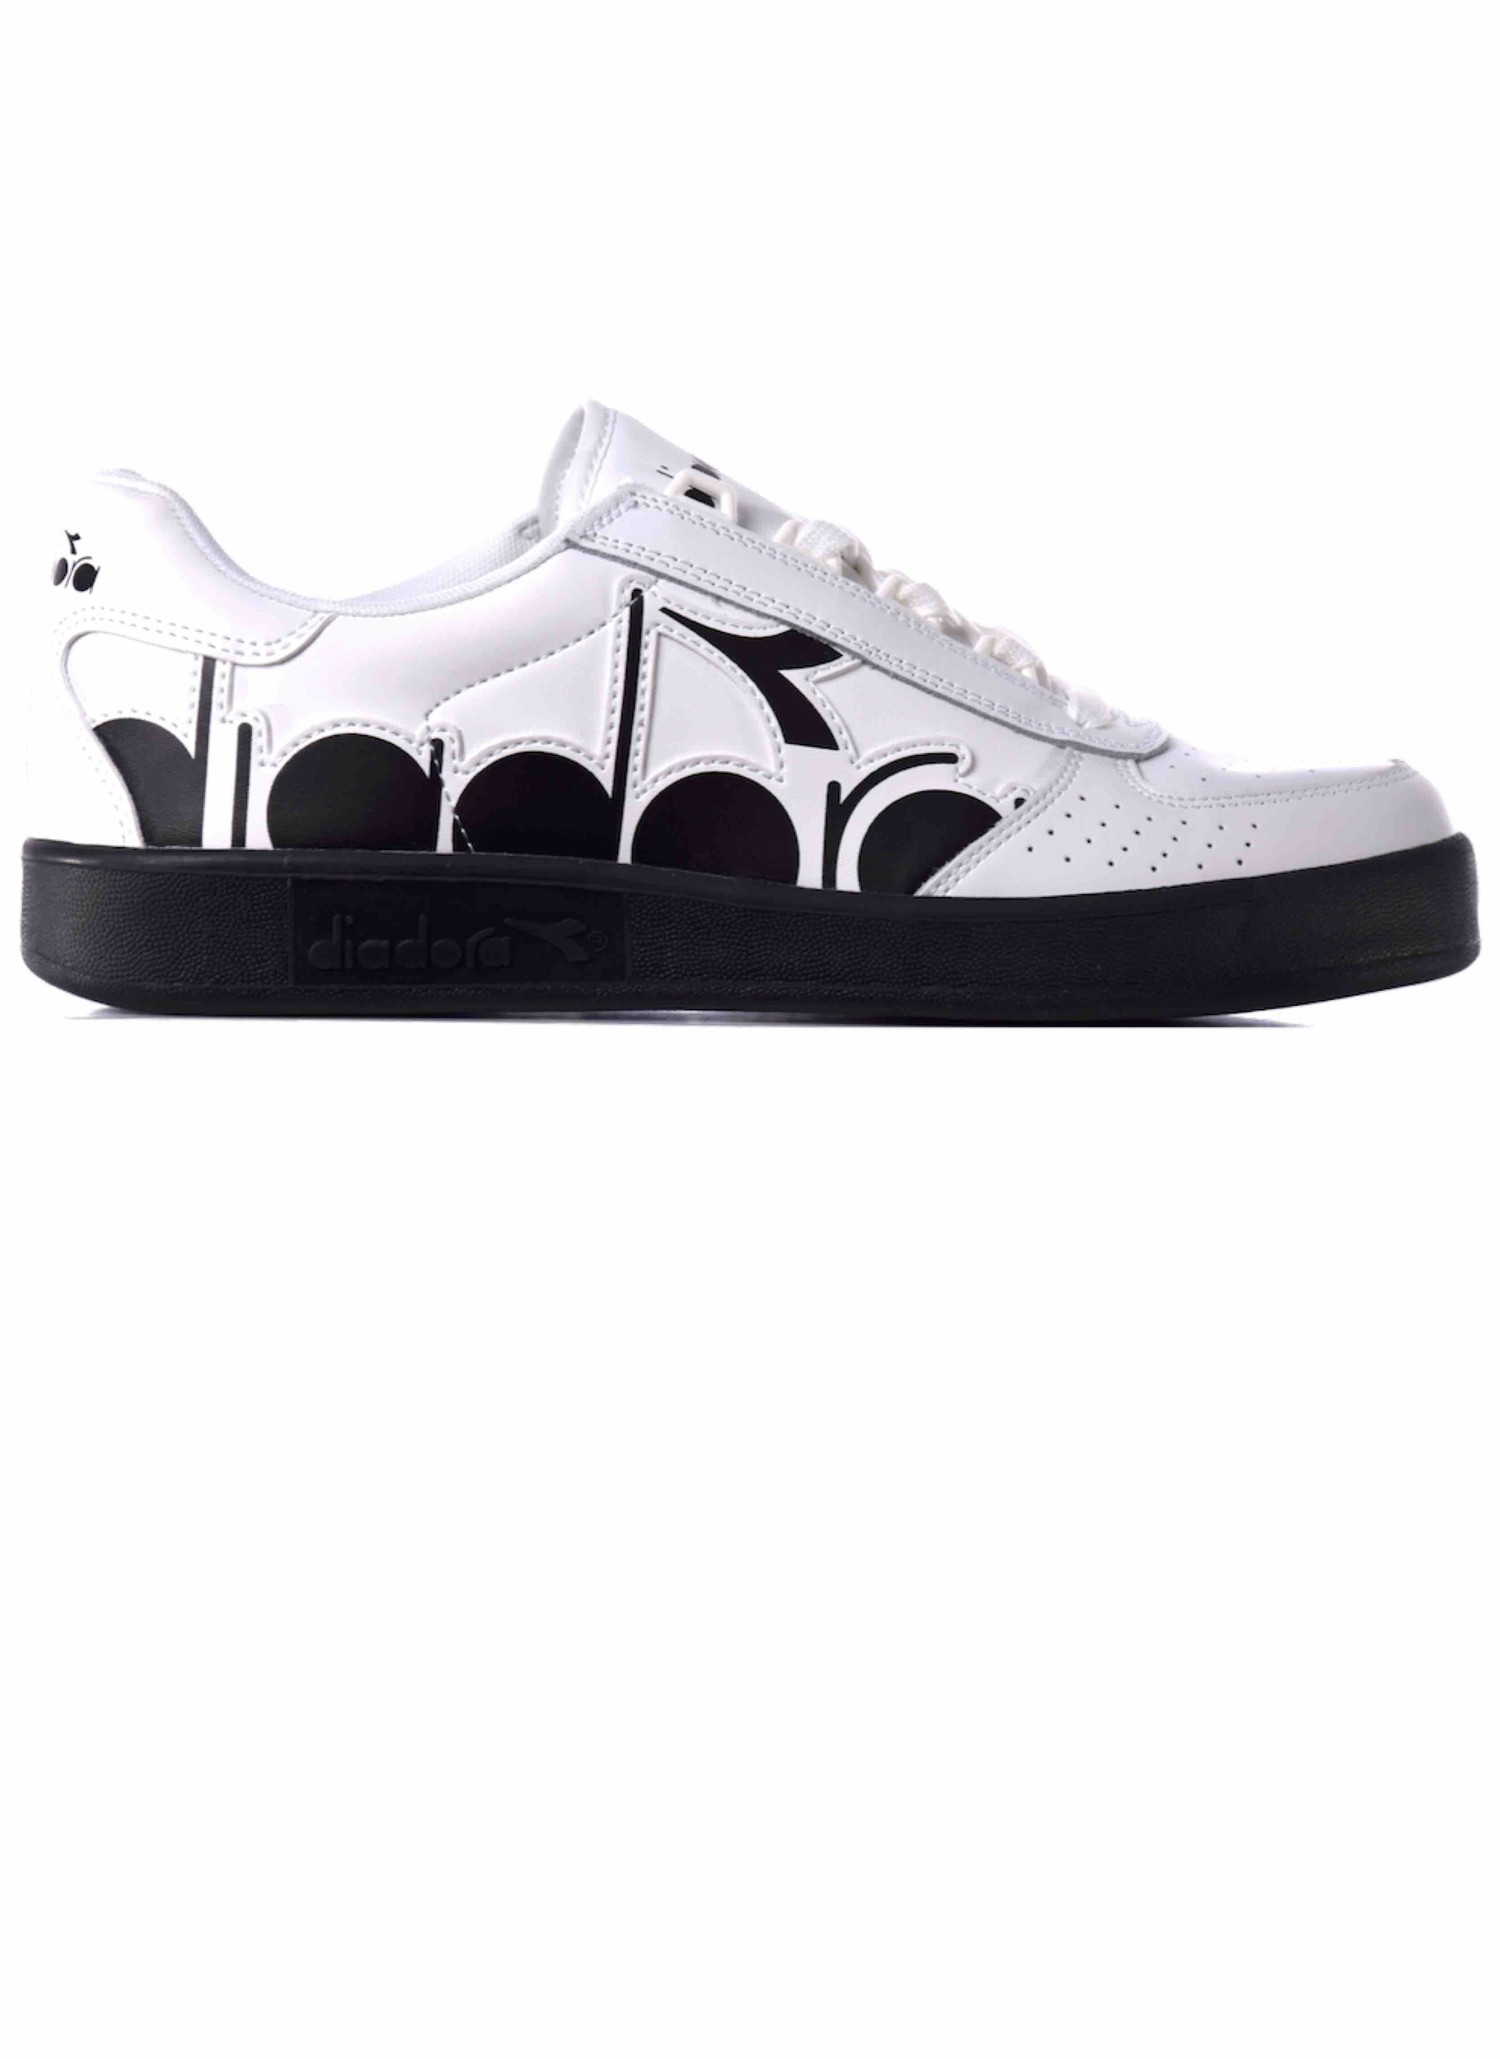 diadora white sneakers